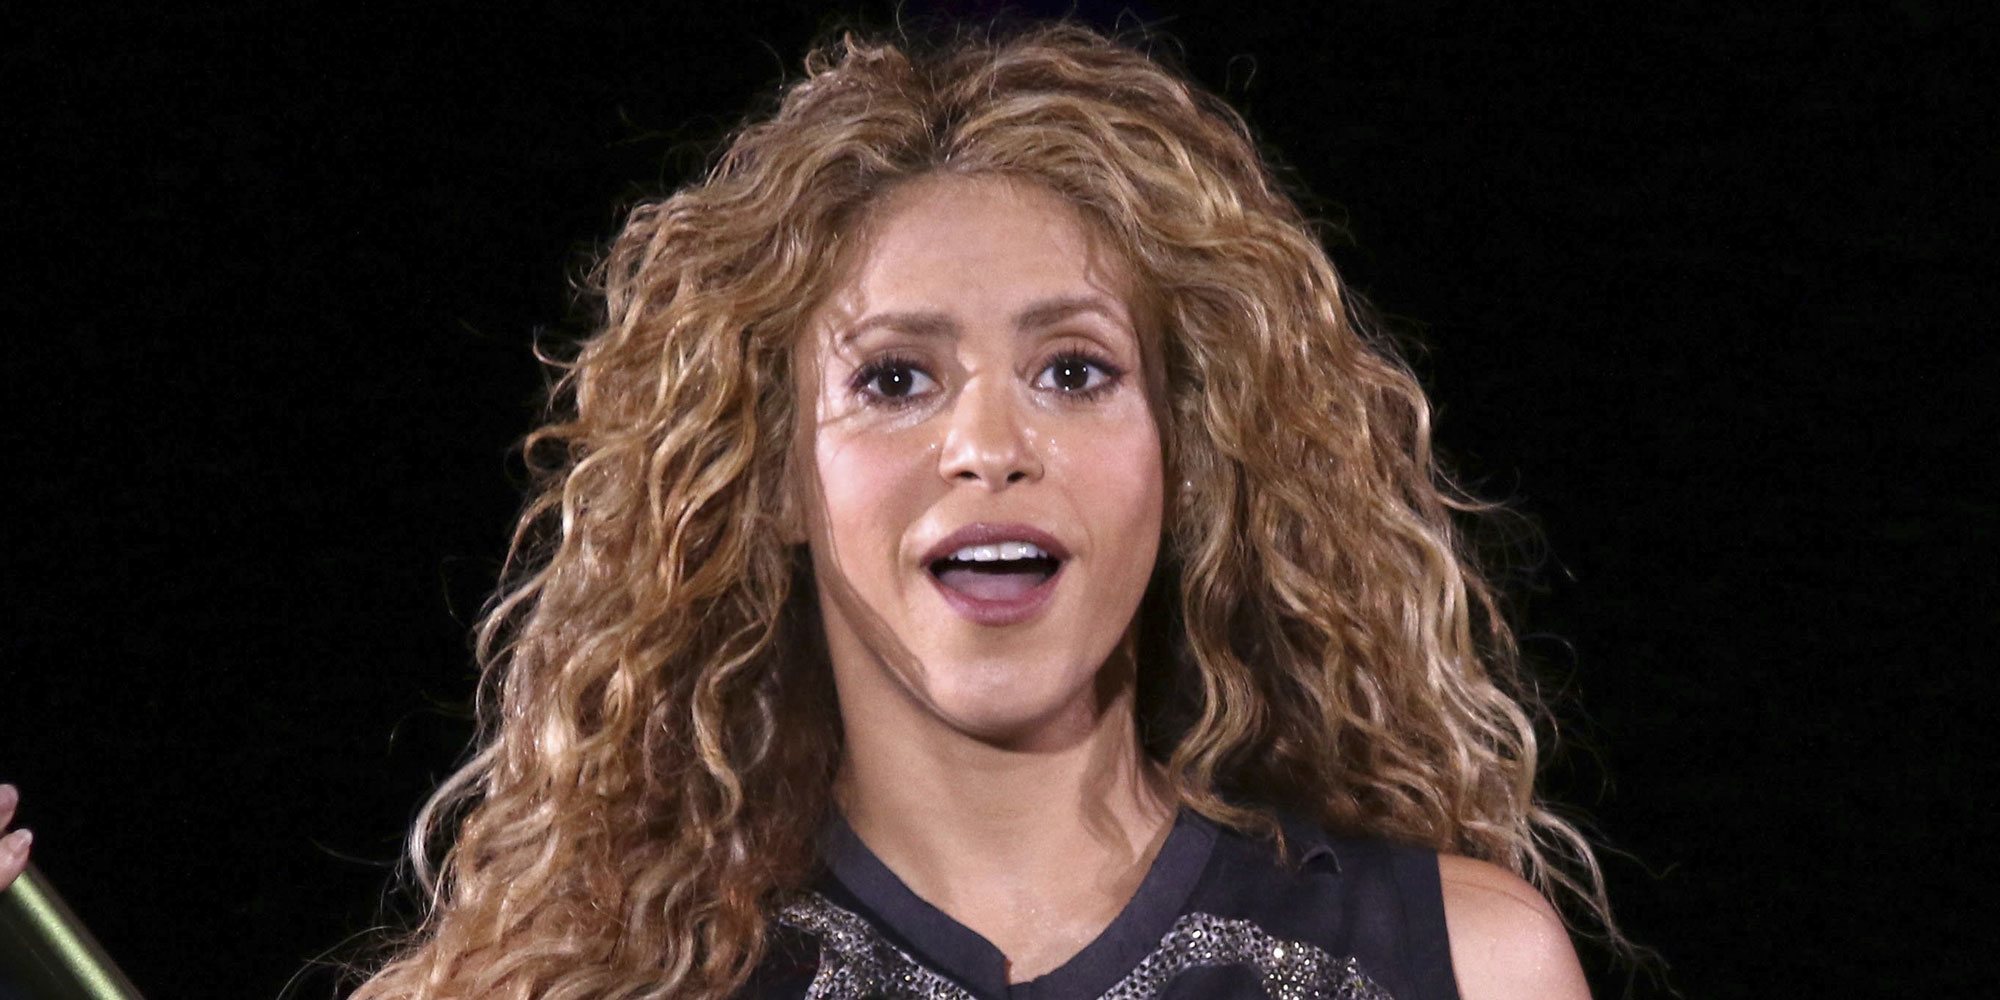 Shakira pide que los niños tengan los mismos derechos que los perros para salir a la calle durante la cuarentena